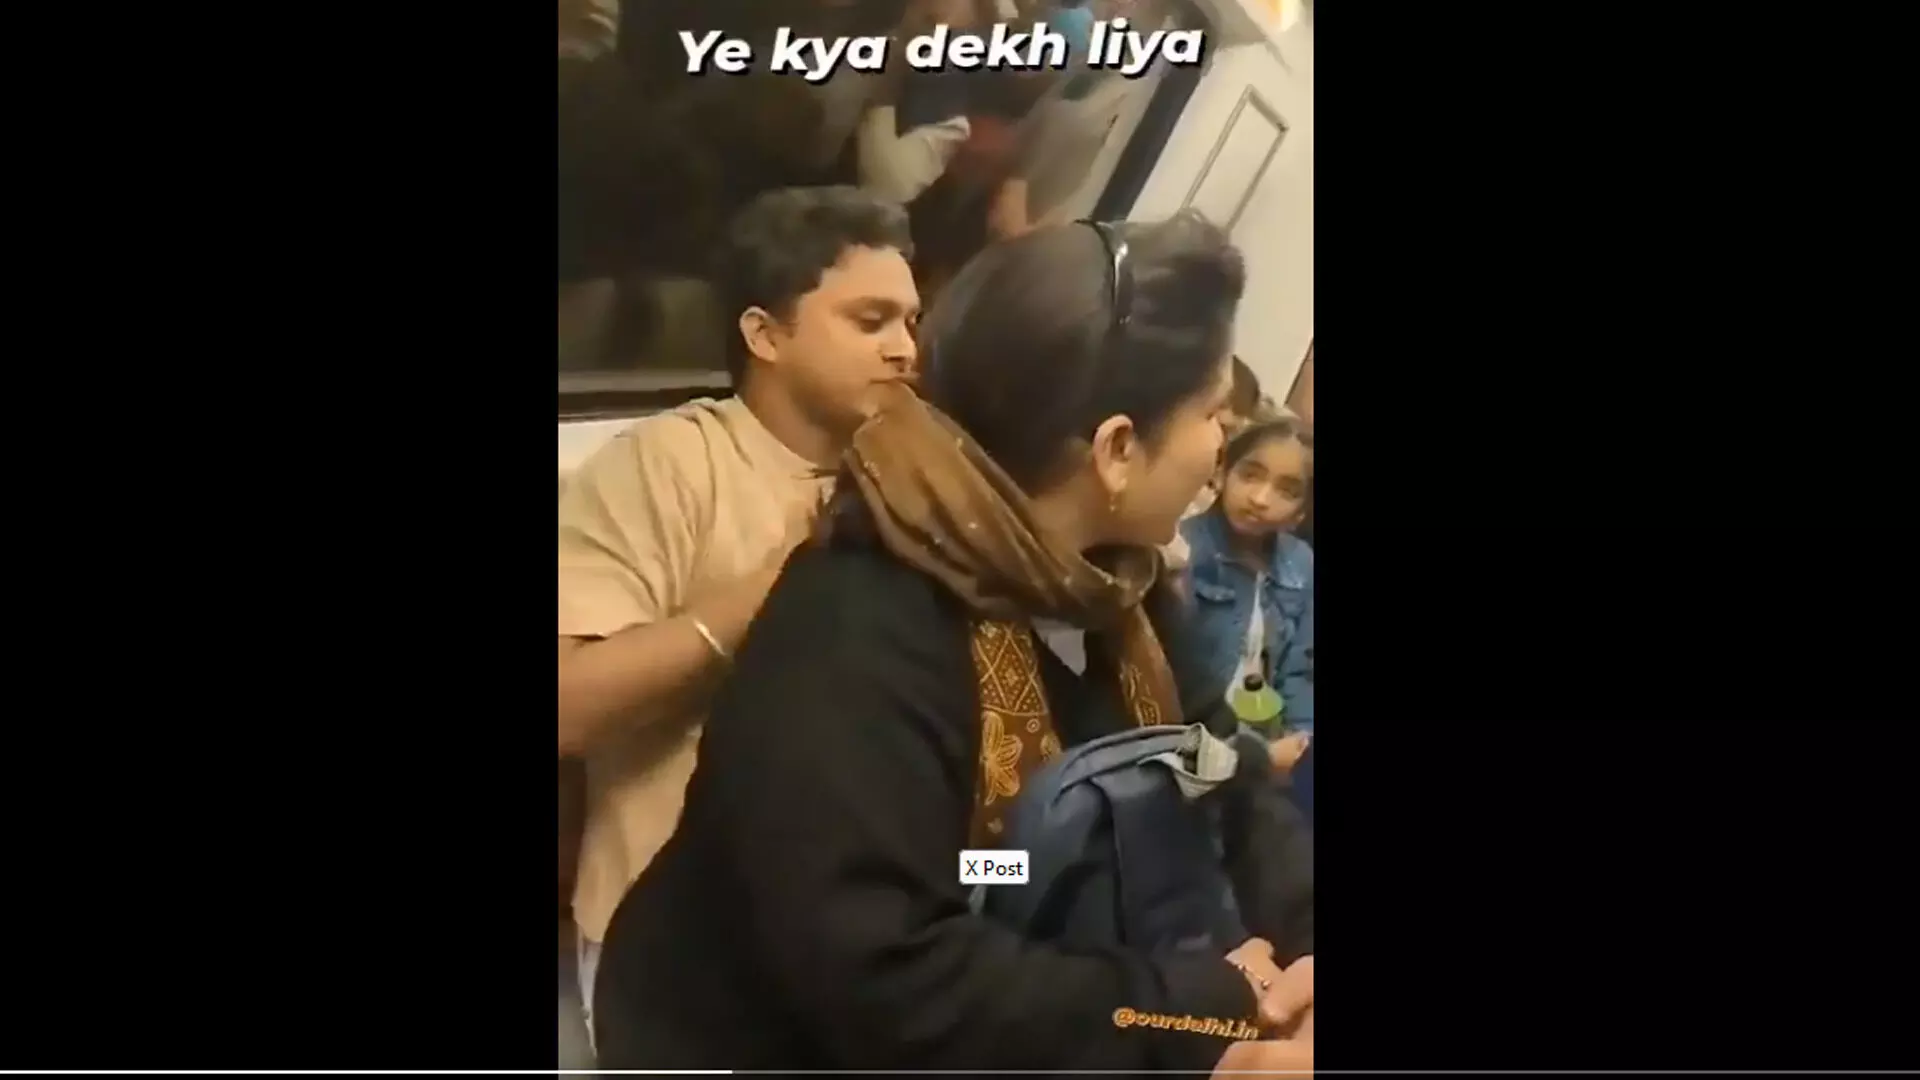 सीट नहीं मिली तो युवक की गोद में बैठ गई महिला, देखें वायरल VIDEO